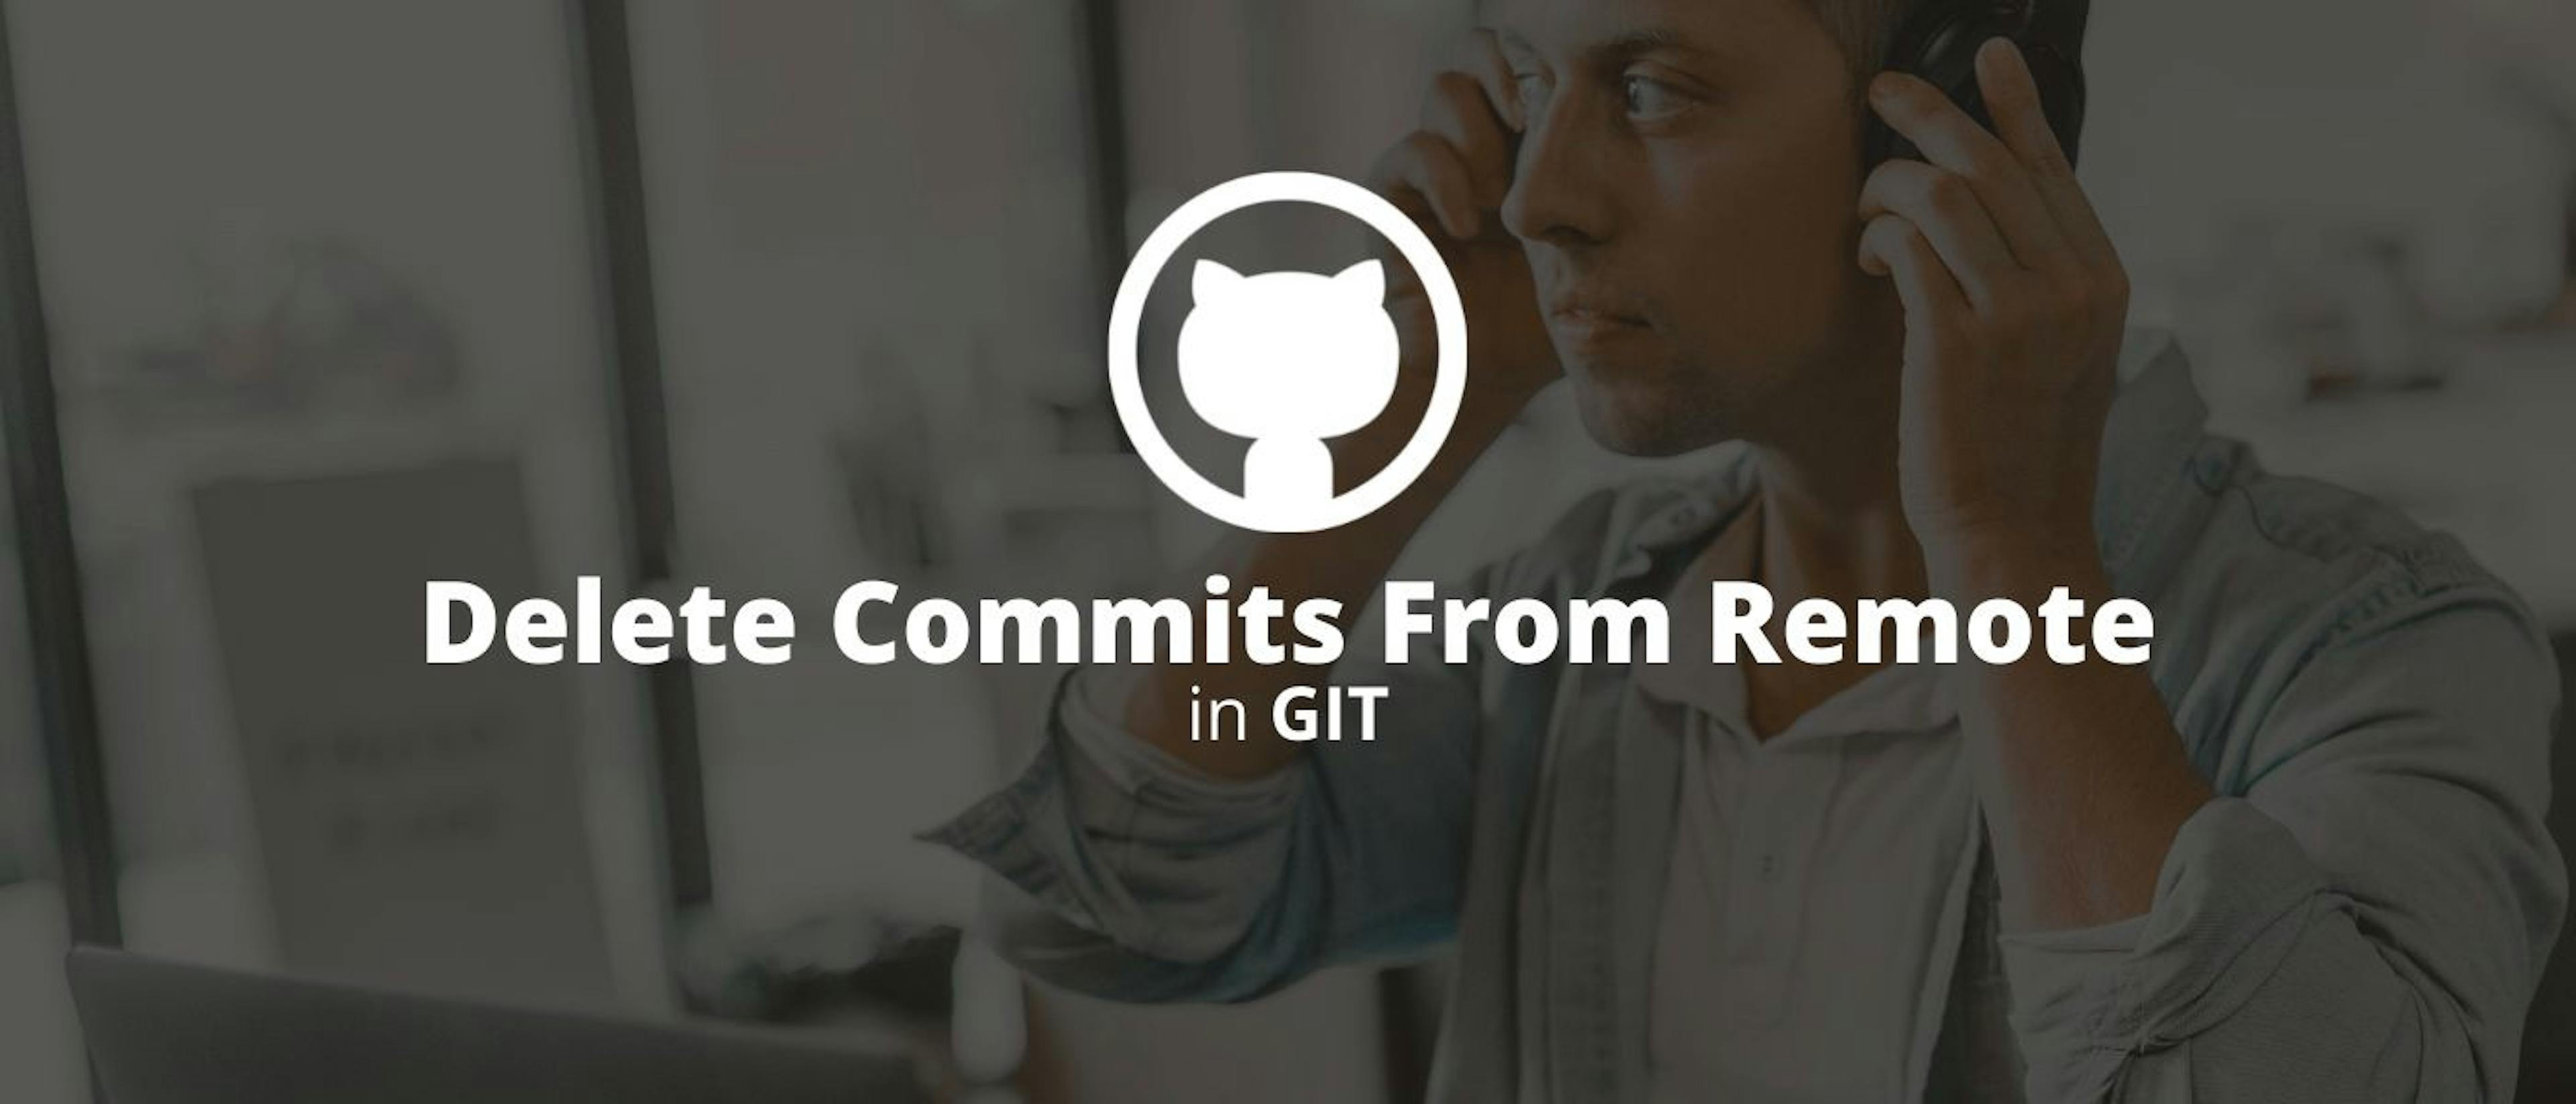 featured image - Как удалить коммиты с удаленного компьютера в Git